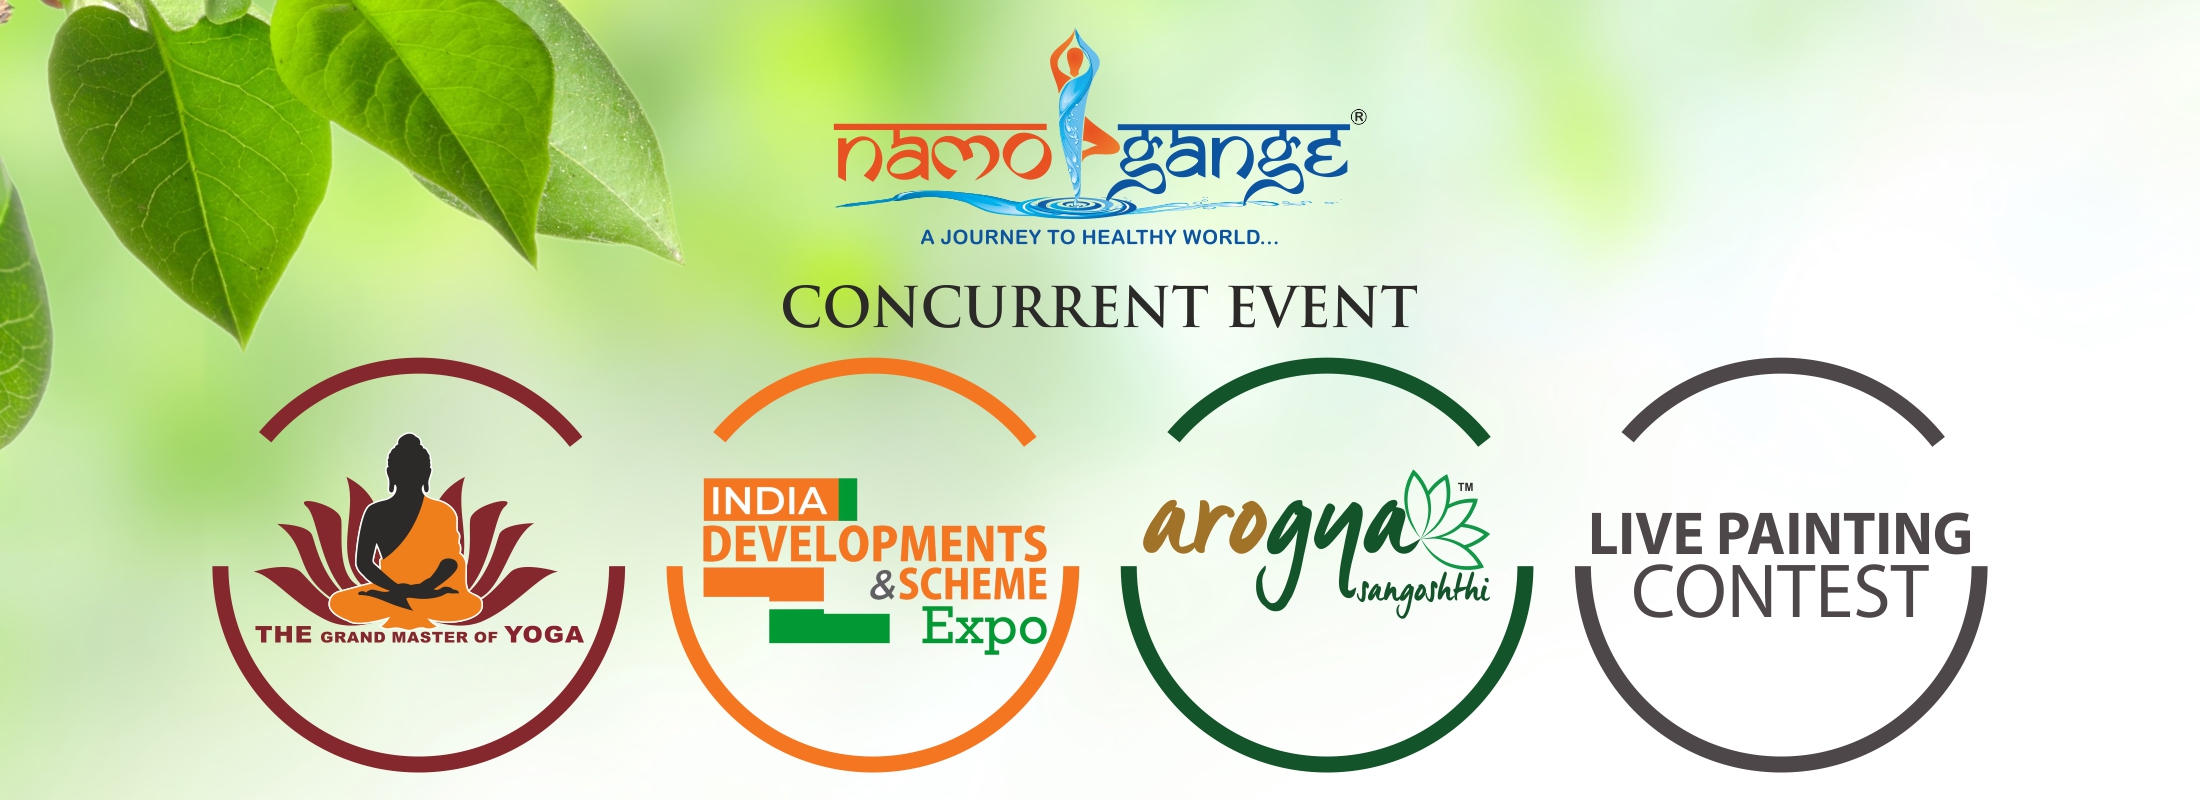 India Development & Scheme Expo